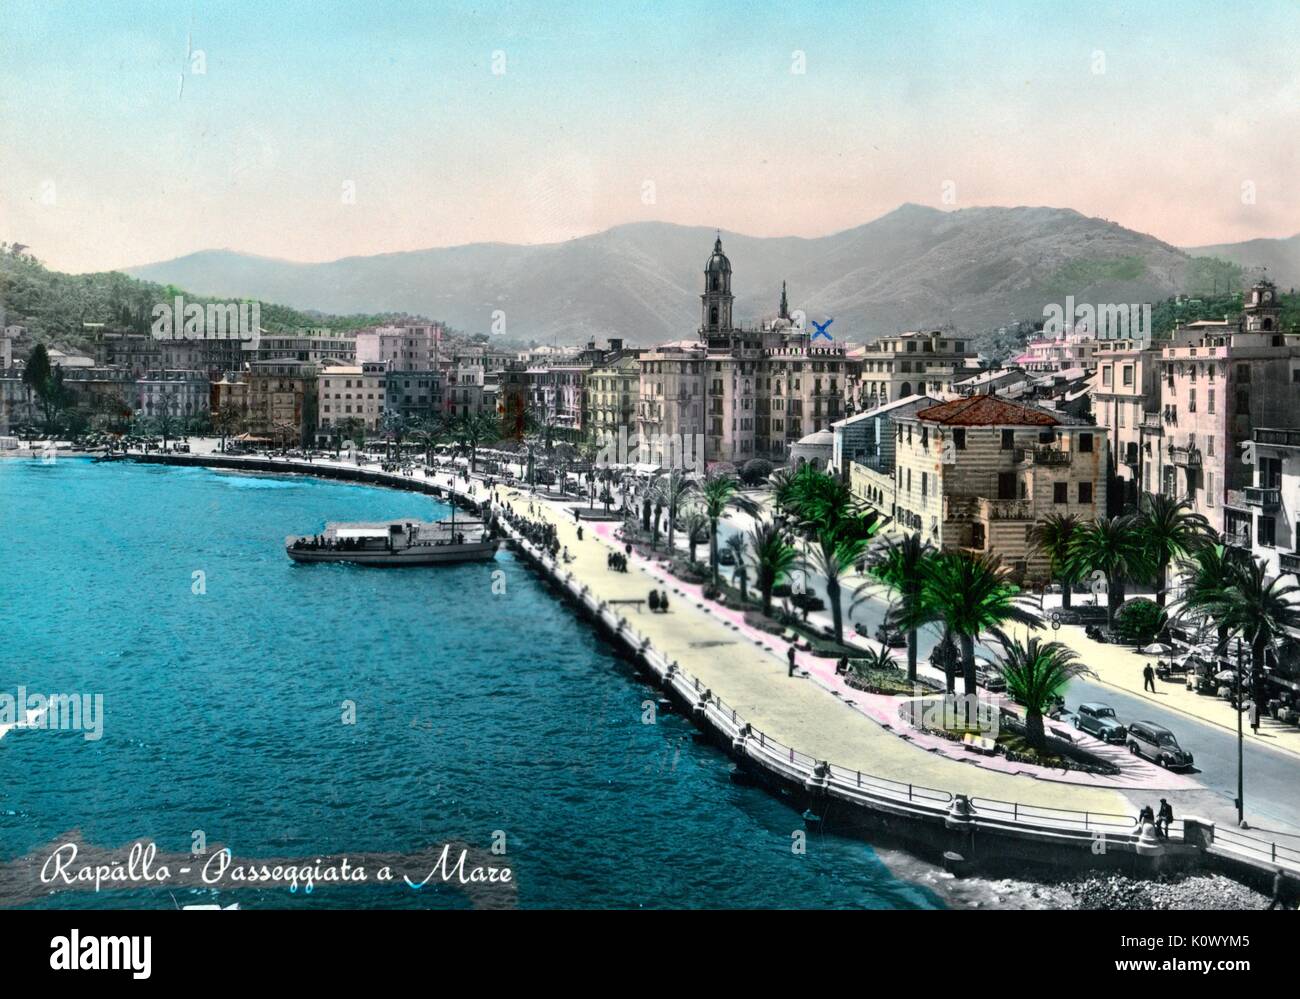 Rapallo, passggiata eine Stute, Postkarte Bild von Stadt und Hafen, Italien, 1967. Stockfoto